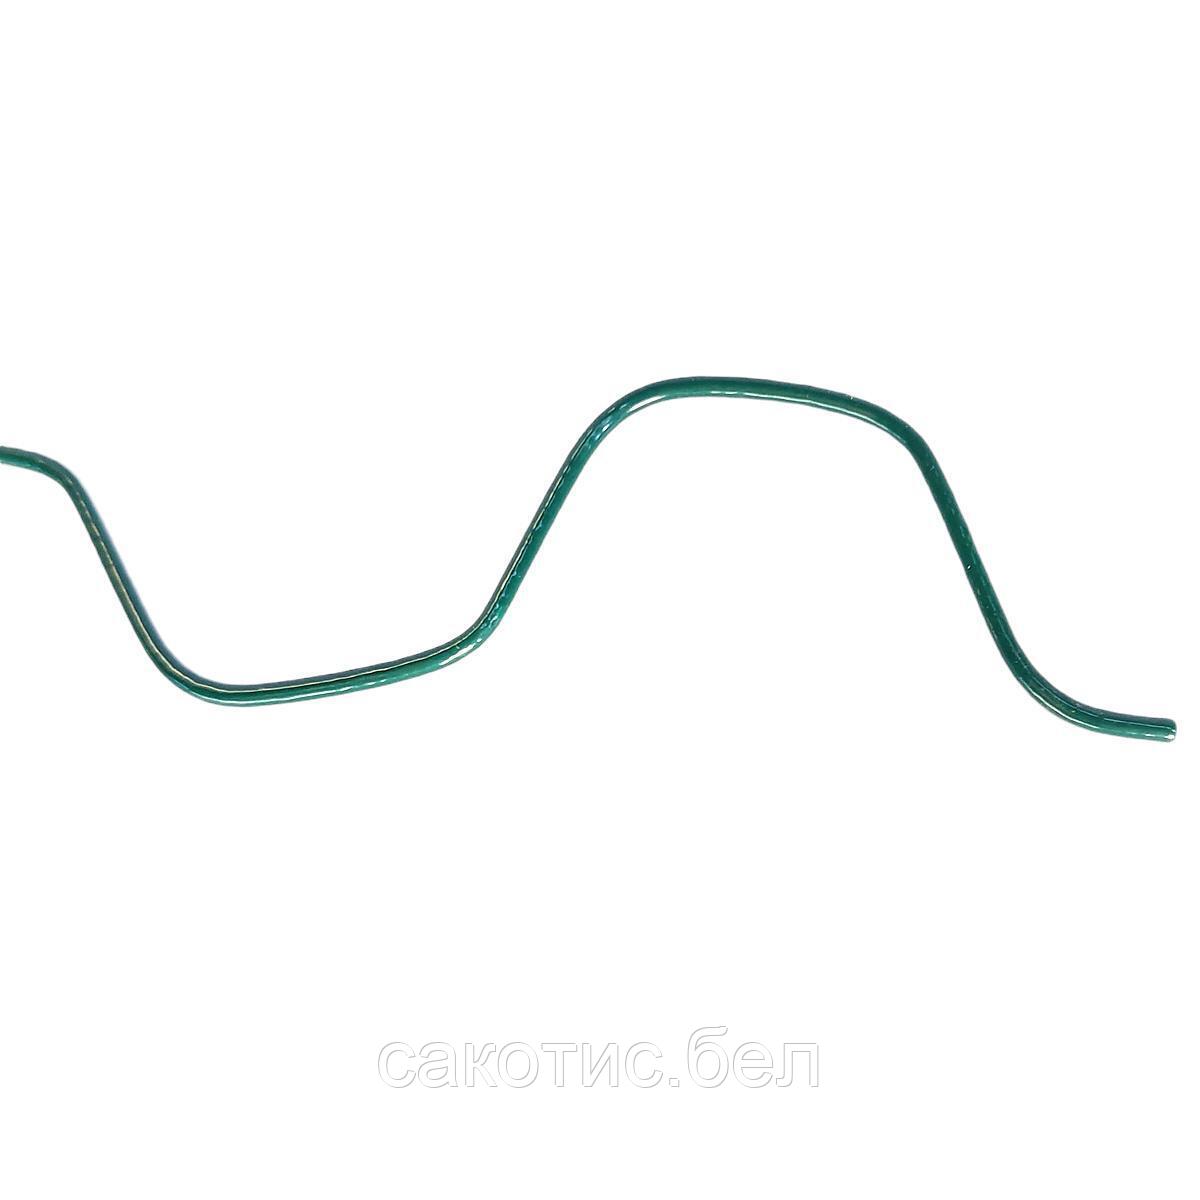 Пружина зиг-заг для профиля зеленая, 2.5мм